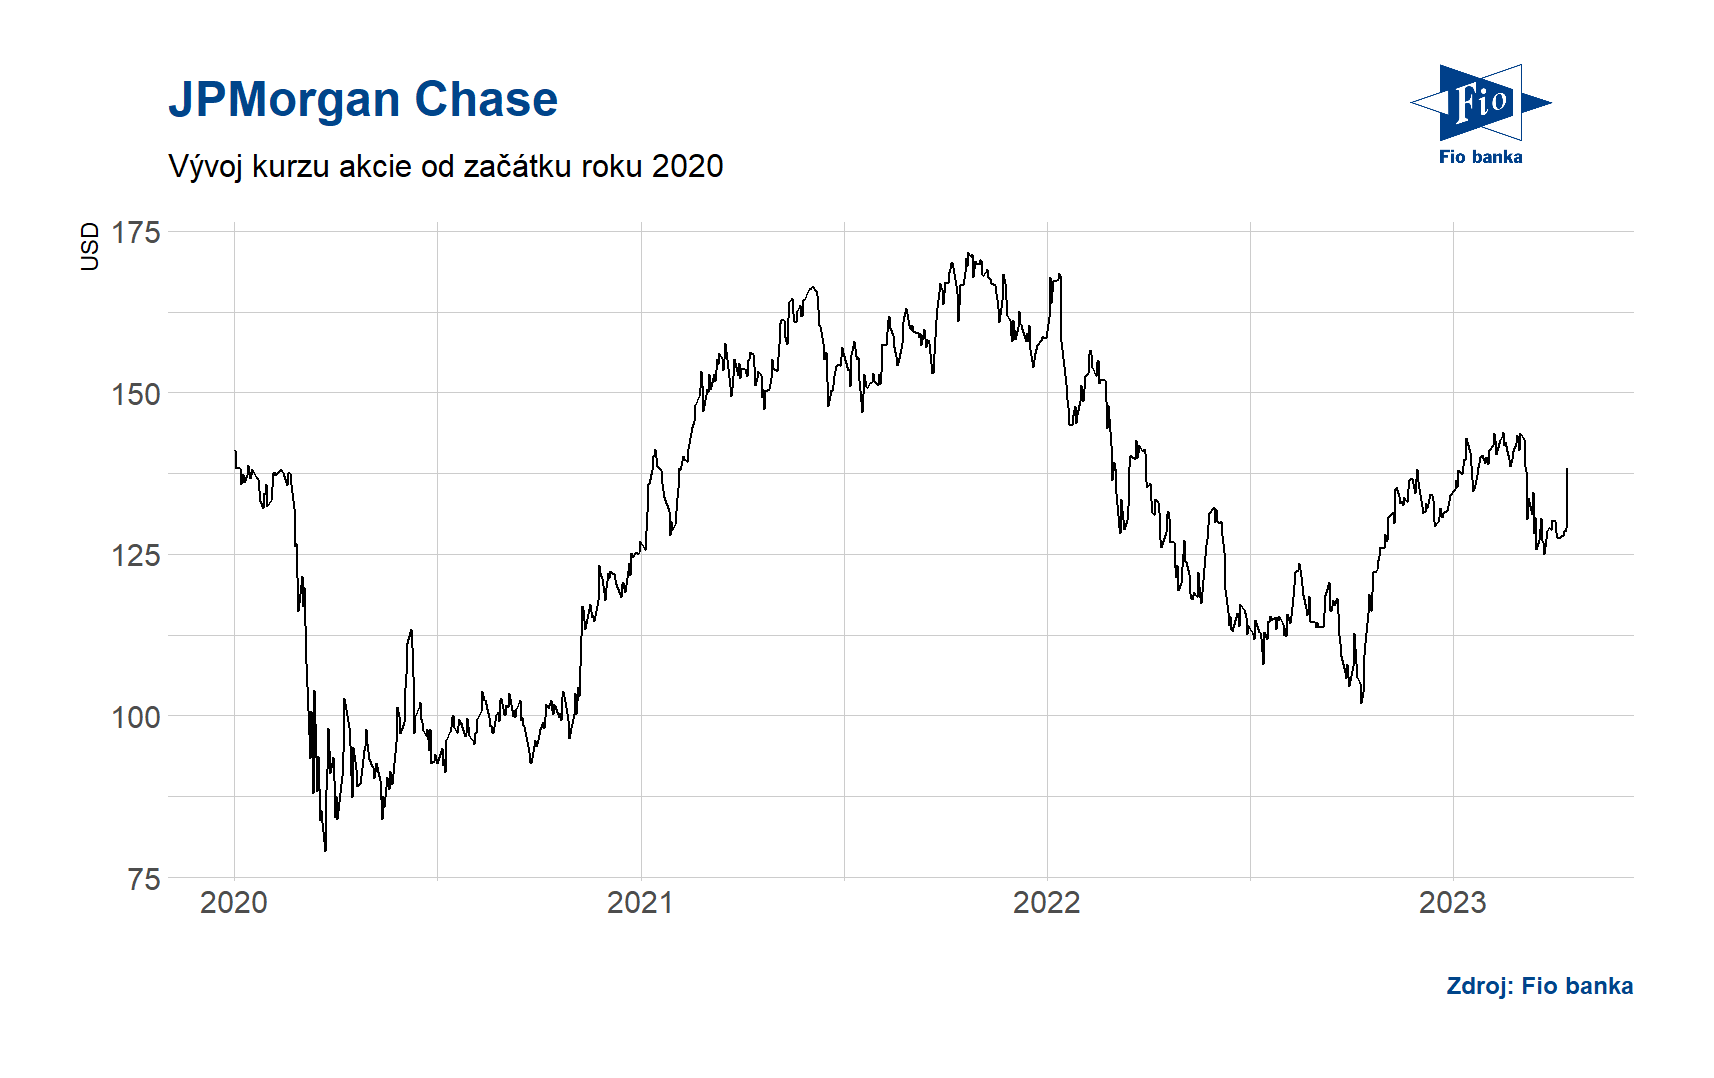 Vývoj akcie JPMorgan Chase